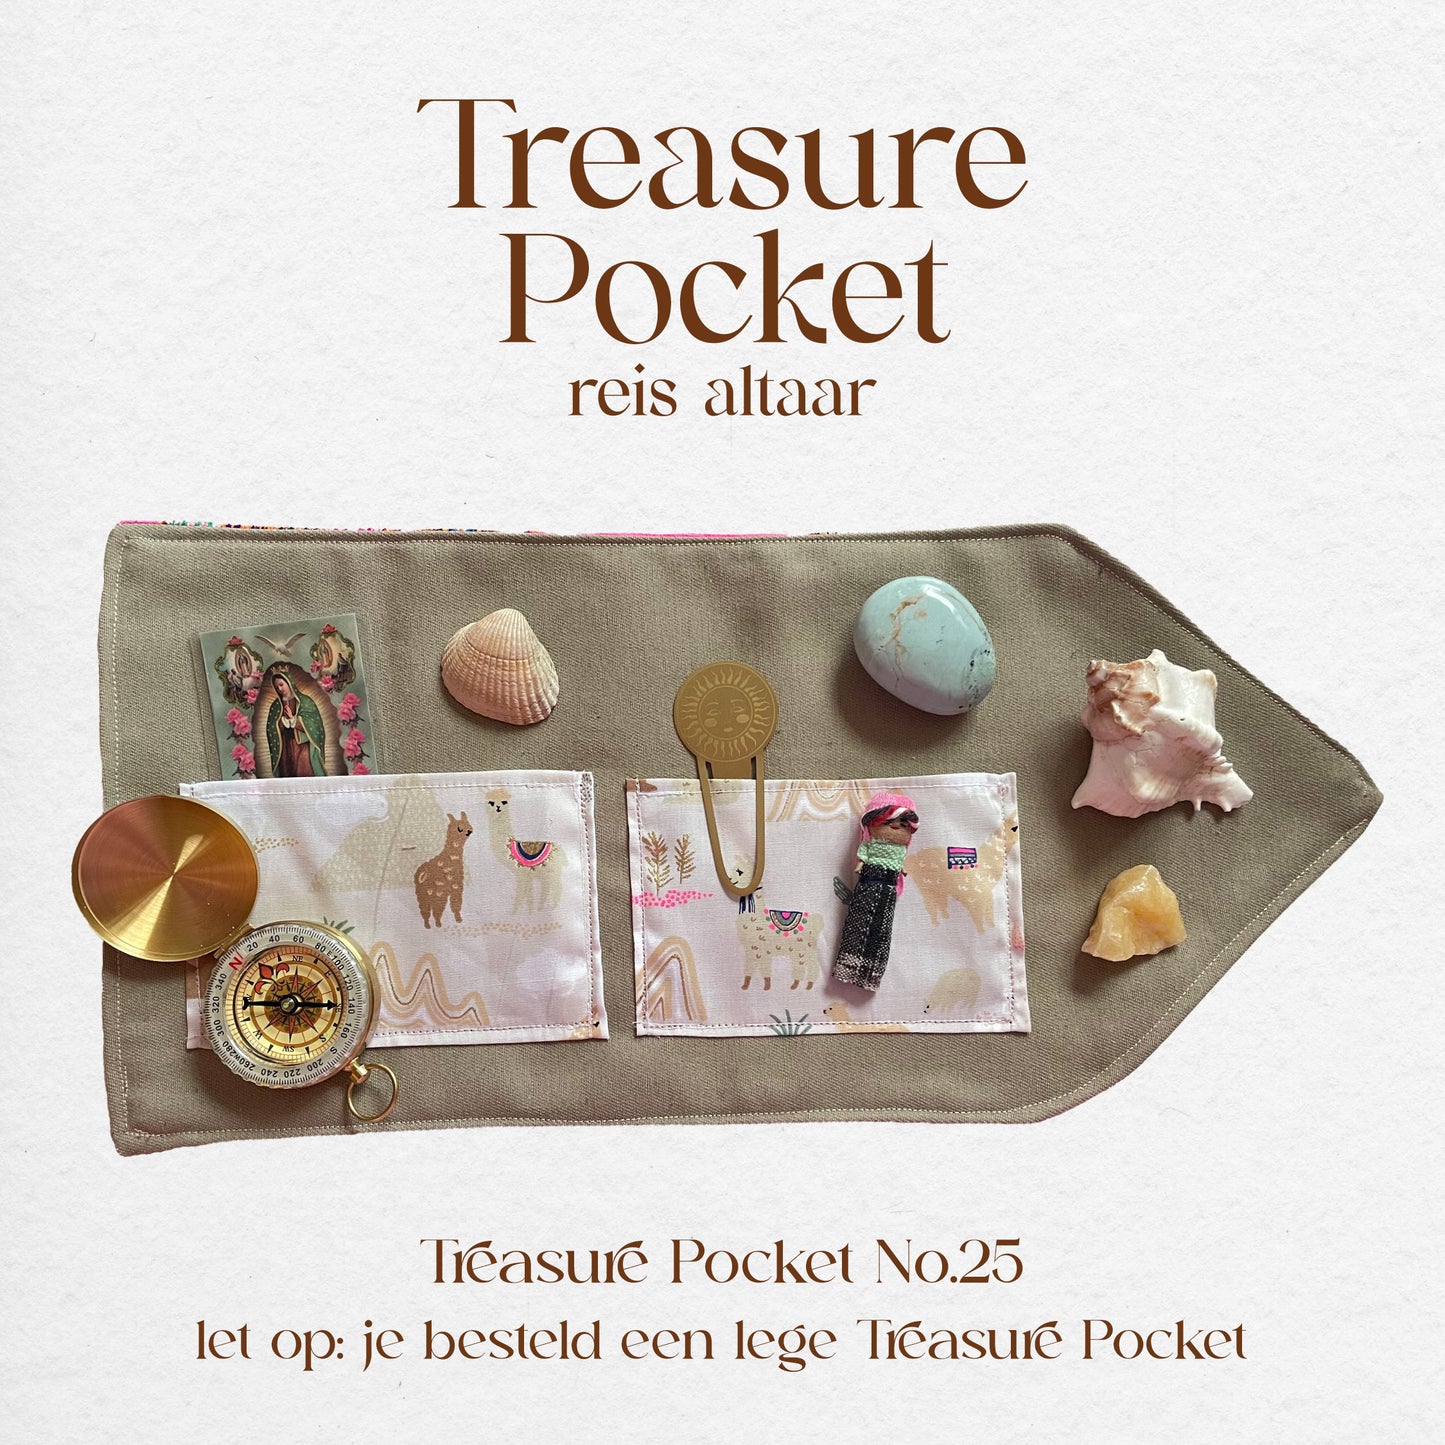 Treasure Pocket No.25